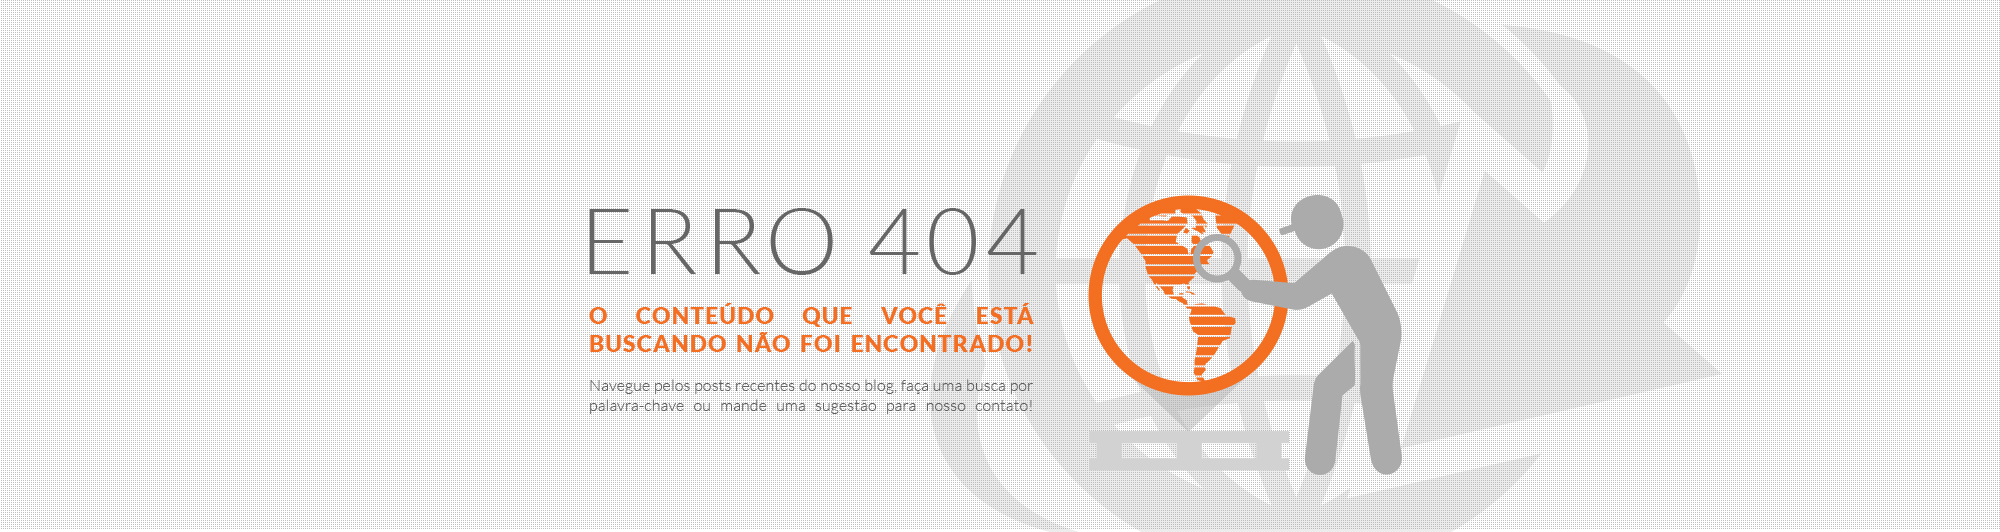 Erro 404 - O conteúdo que você está buscando não foi encontrado!